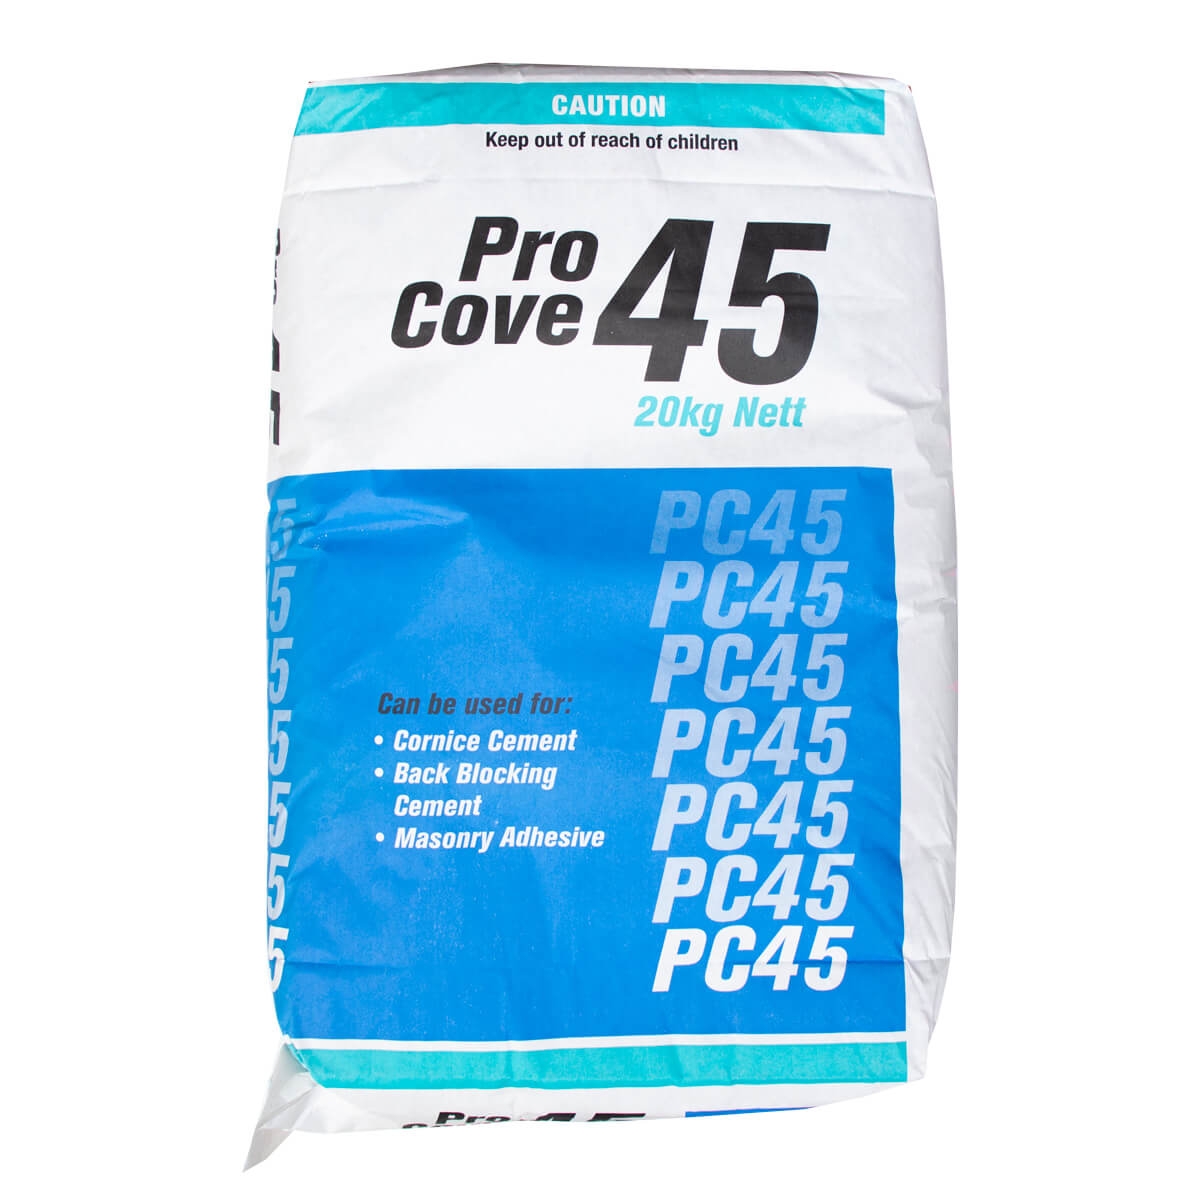 Pro Cove Cornice Cement 45min 20kgs